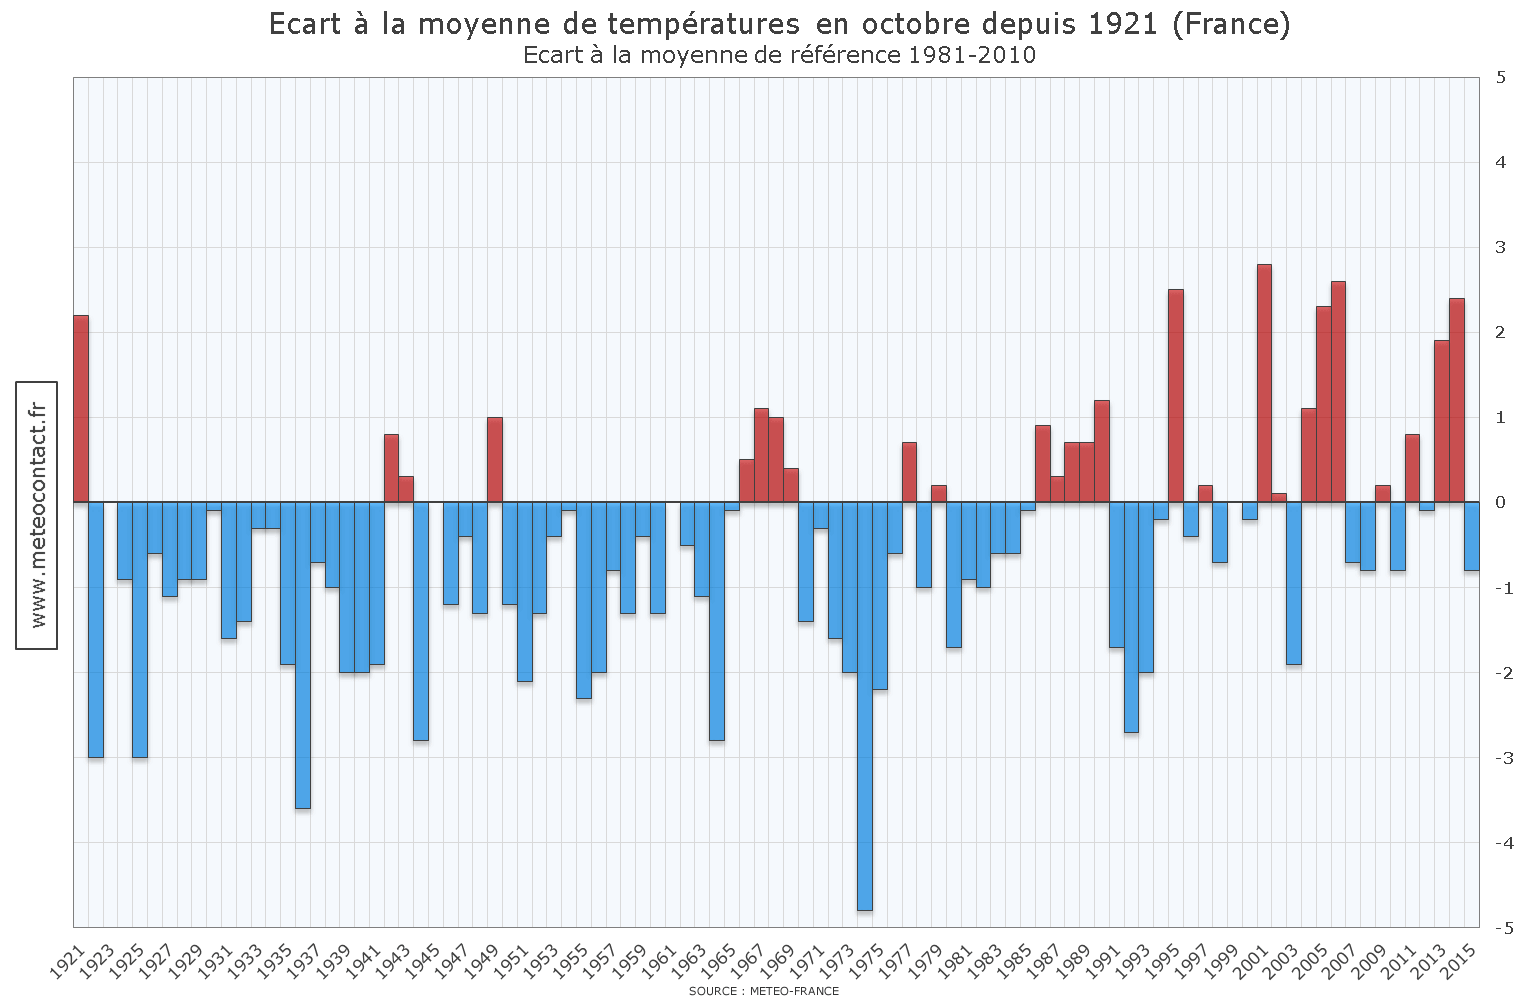 Écart à la moyenne de températures en octobre depuis 1921